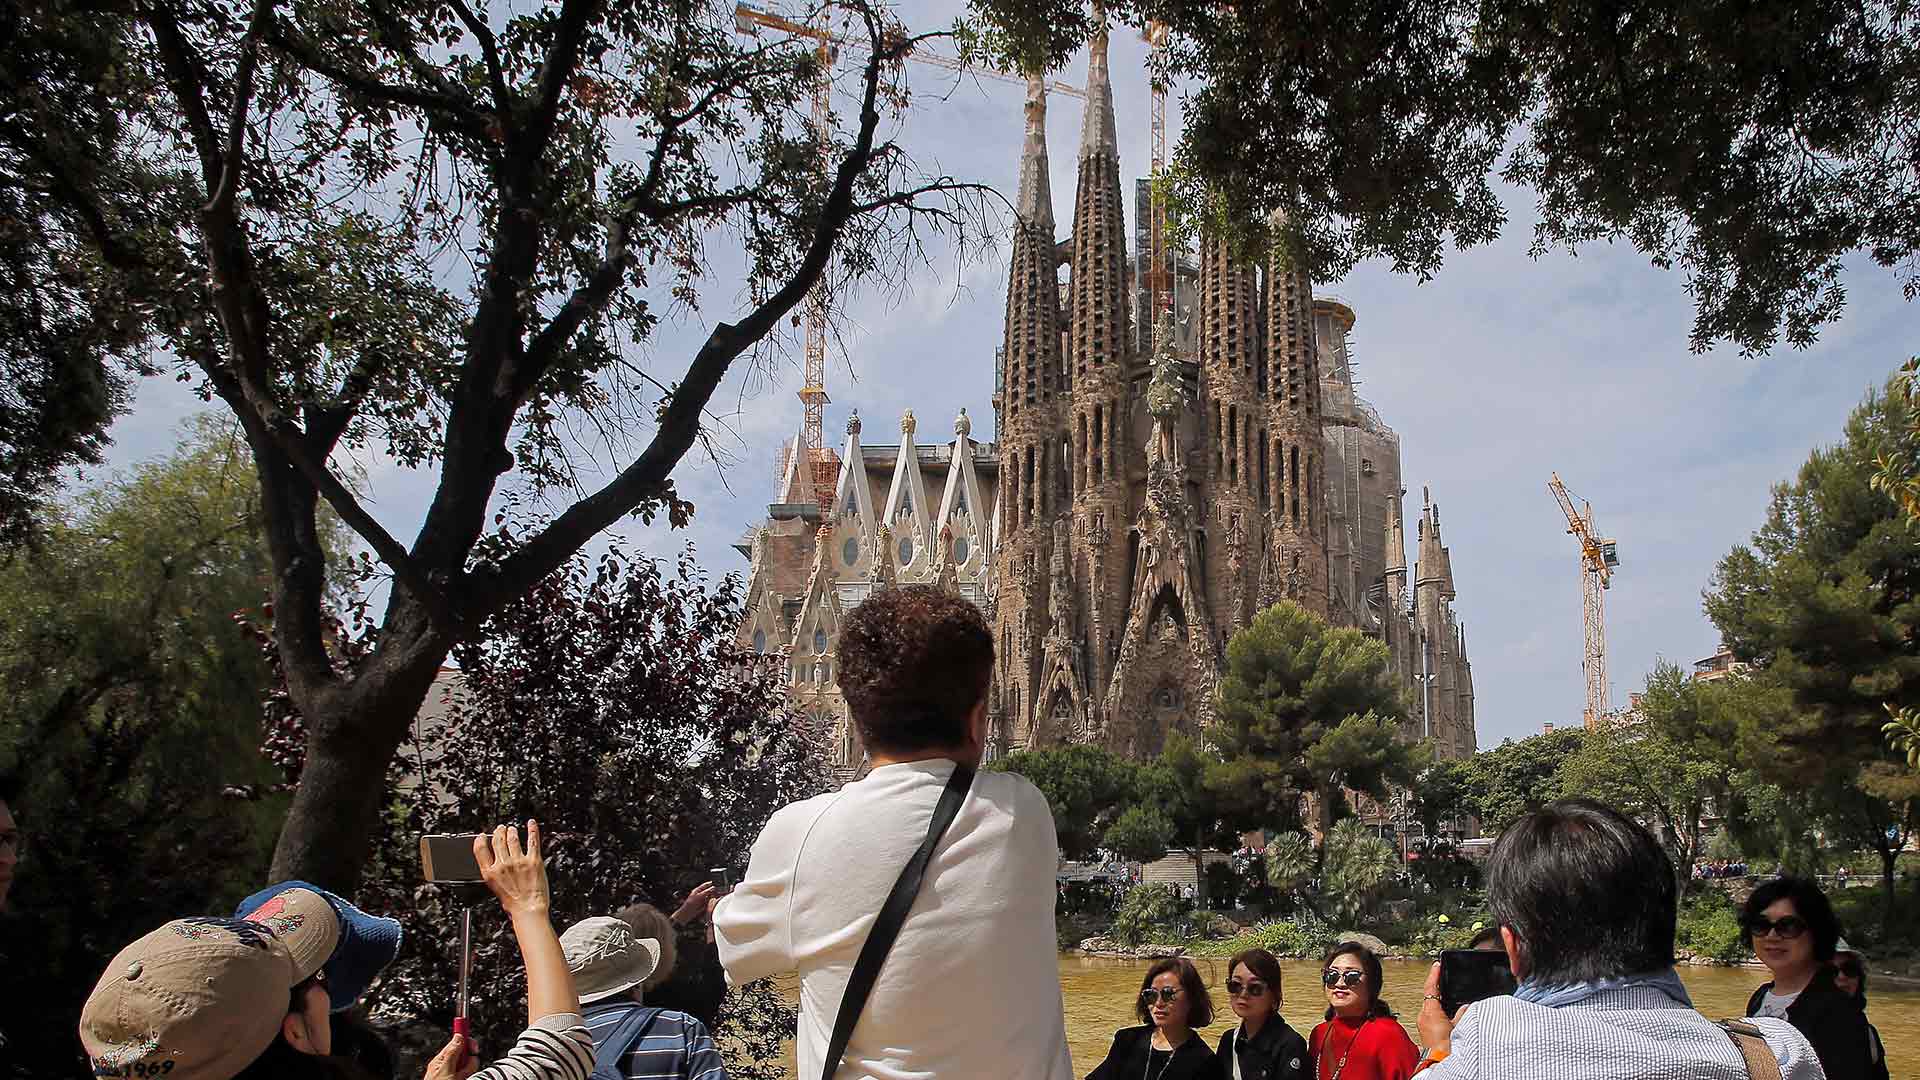 España recibió en 2018 la cifra récord de 82,8 millones de turistas